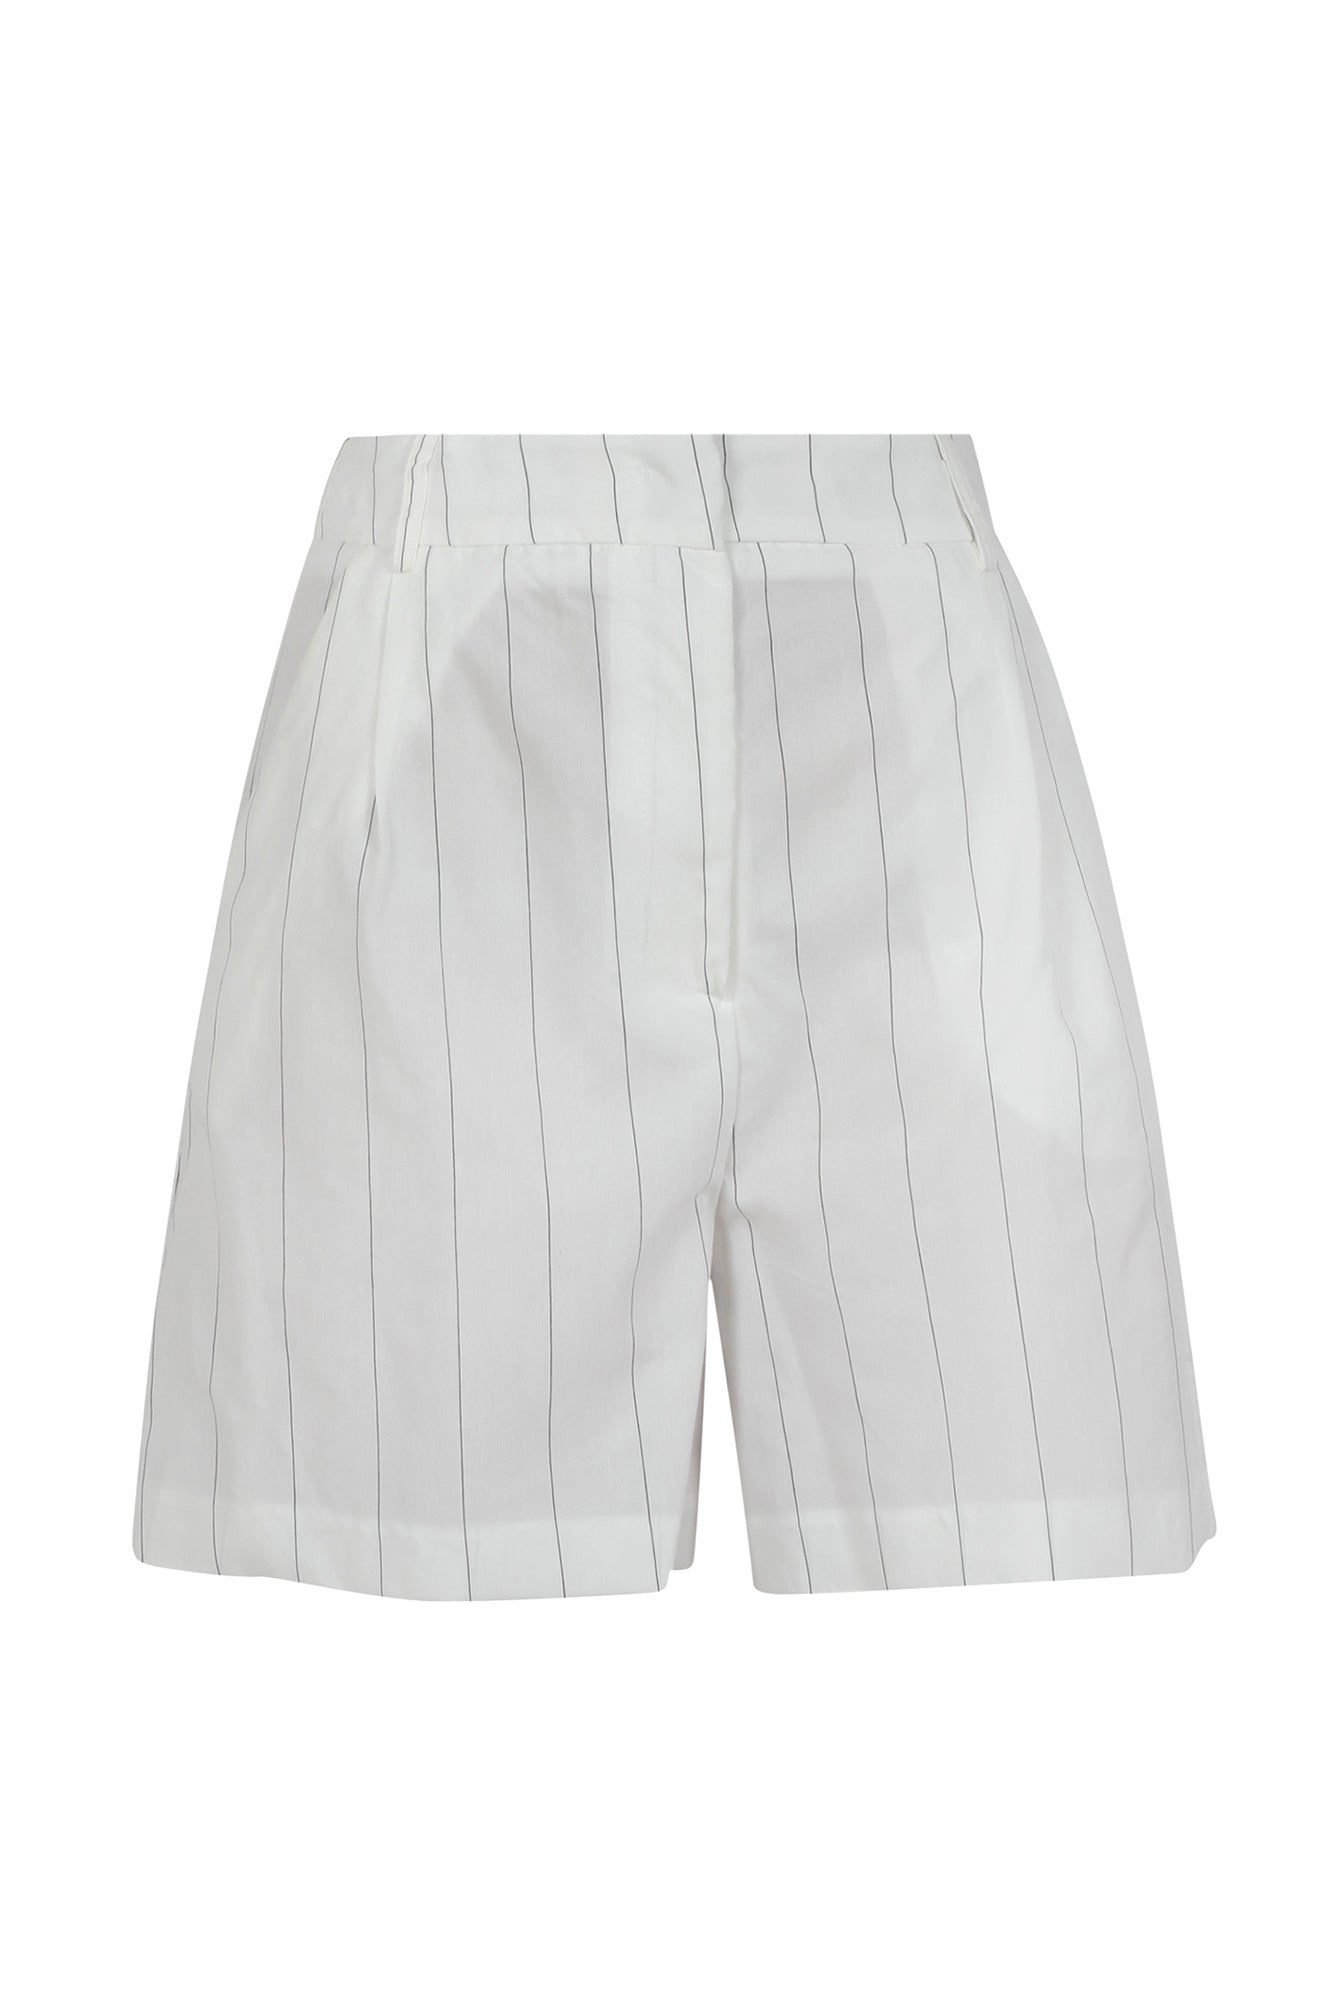 So Allure - Shorts - 430901 - Bianco/Nero